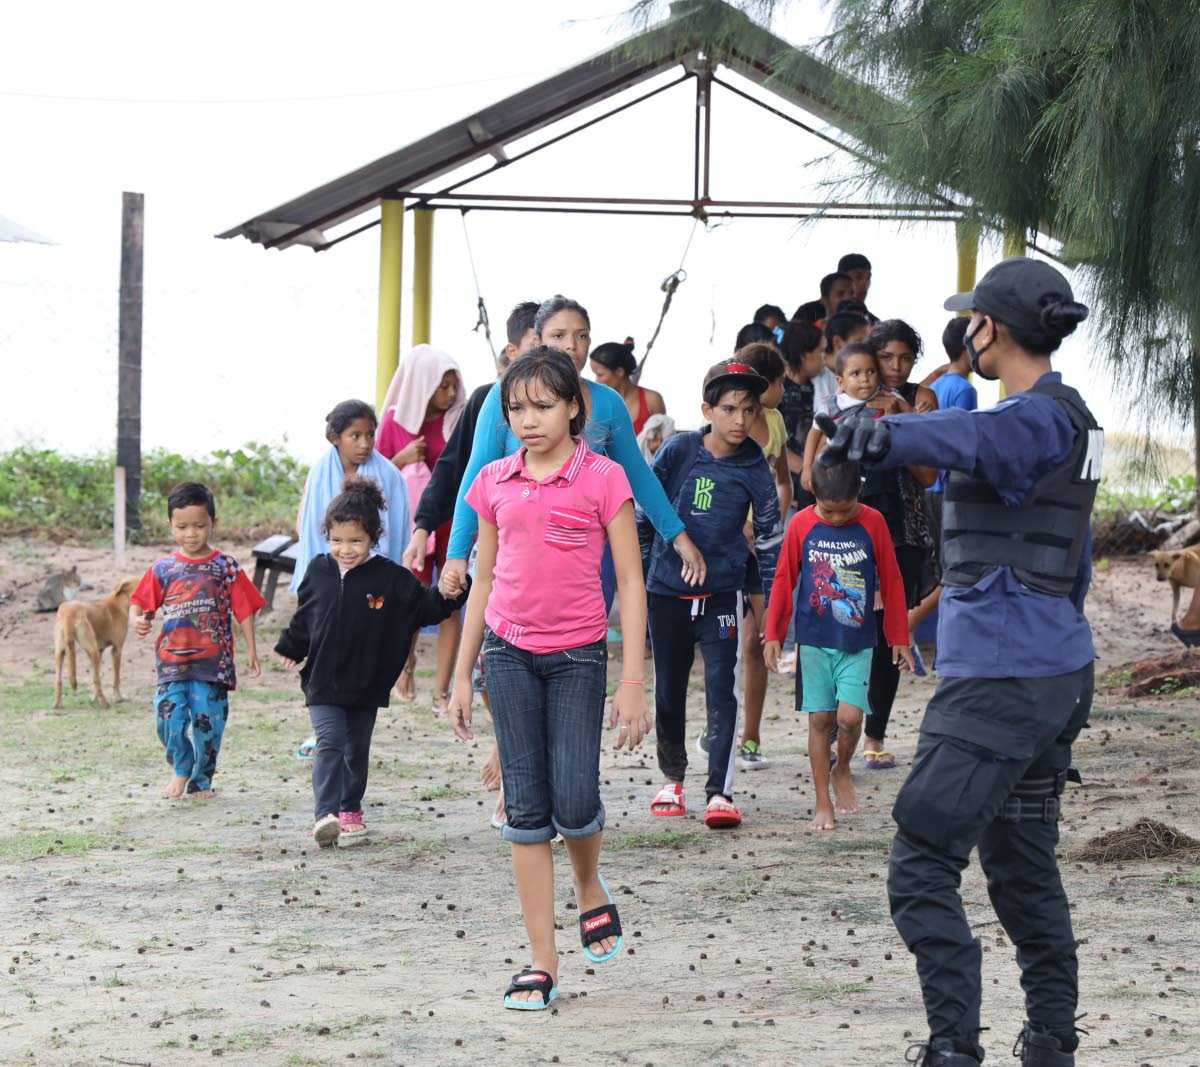 Venezuelan migrants plea for release of their children